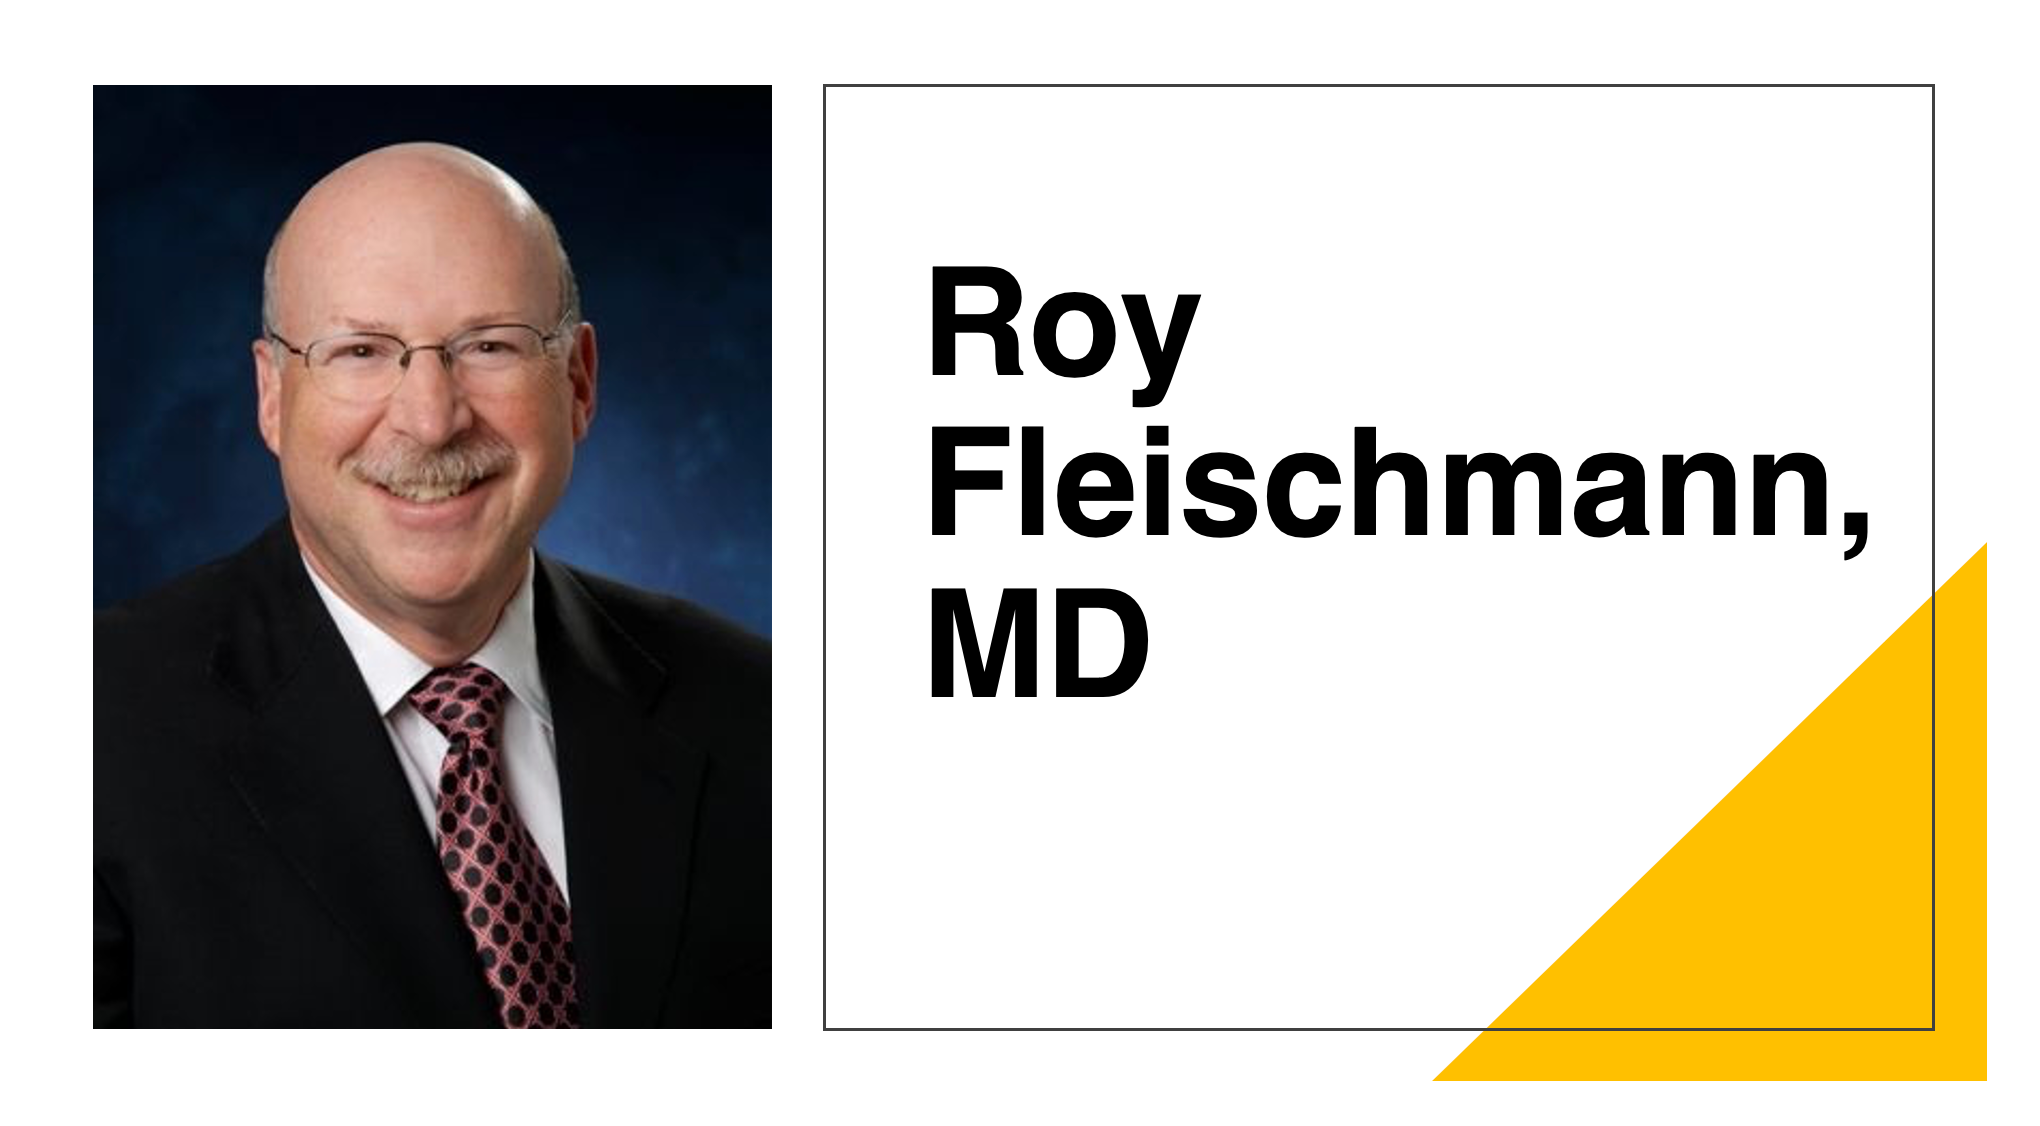 Roy Fleischmann, MD: The Safety of JAK Inhibitors